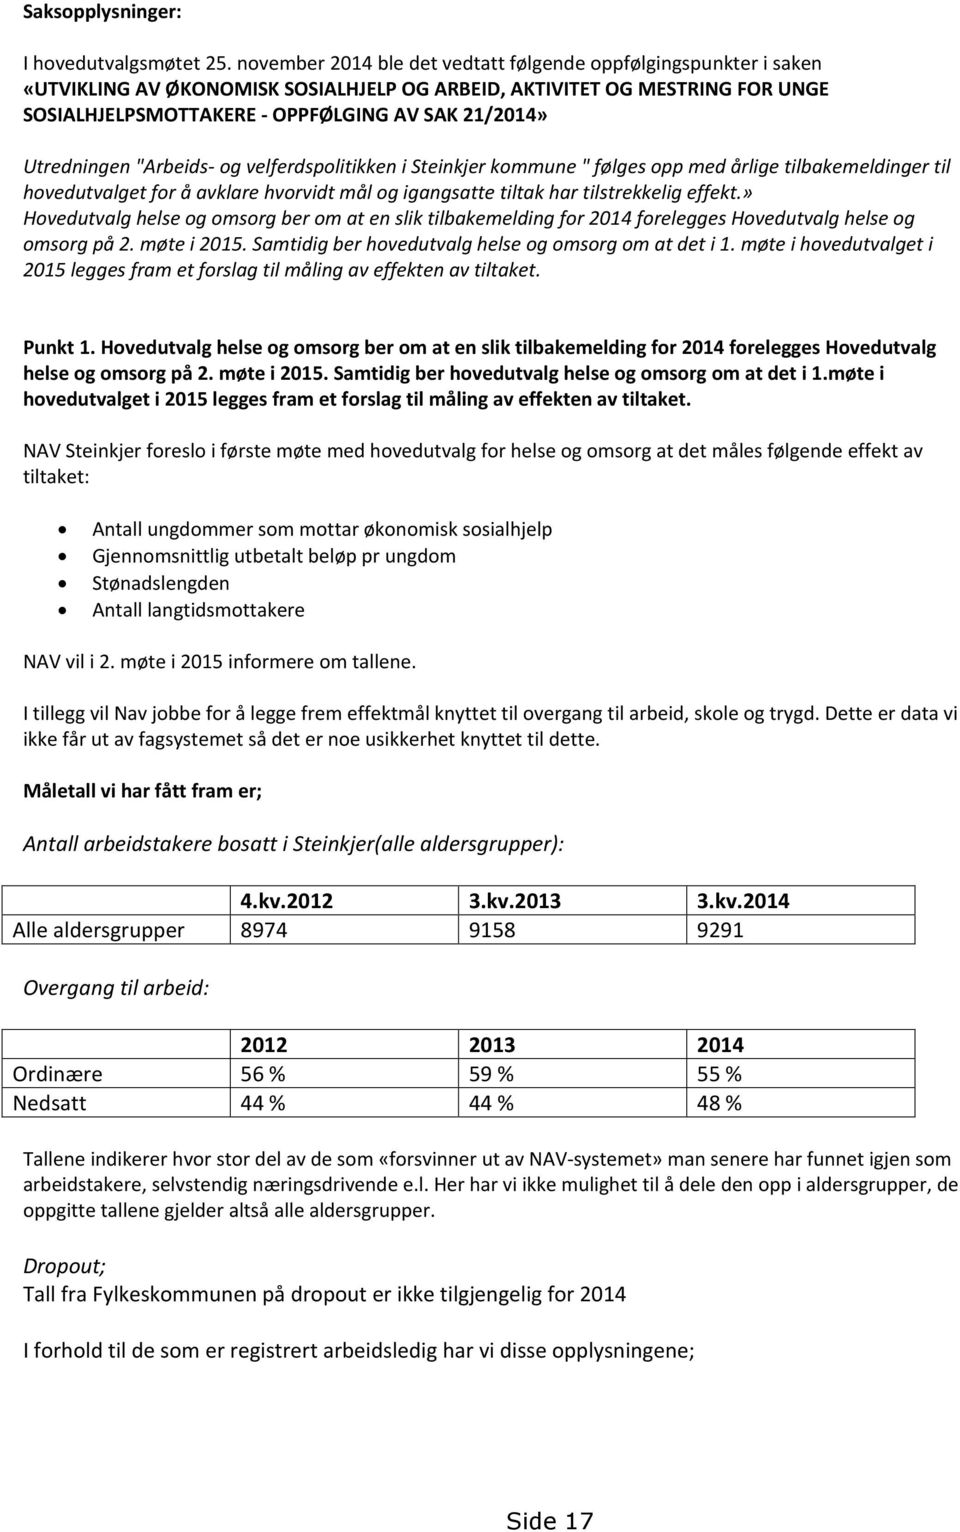 Utredningen "Arbeids- og velferdspolitikken i Steinkjer kommune " følges opp med årlige tilbakemeldinger til hovedutvalget for å avklare hvorvidt mål og igangsatte tiltak har tilstrekkelig effekt.